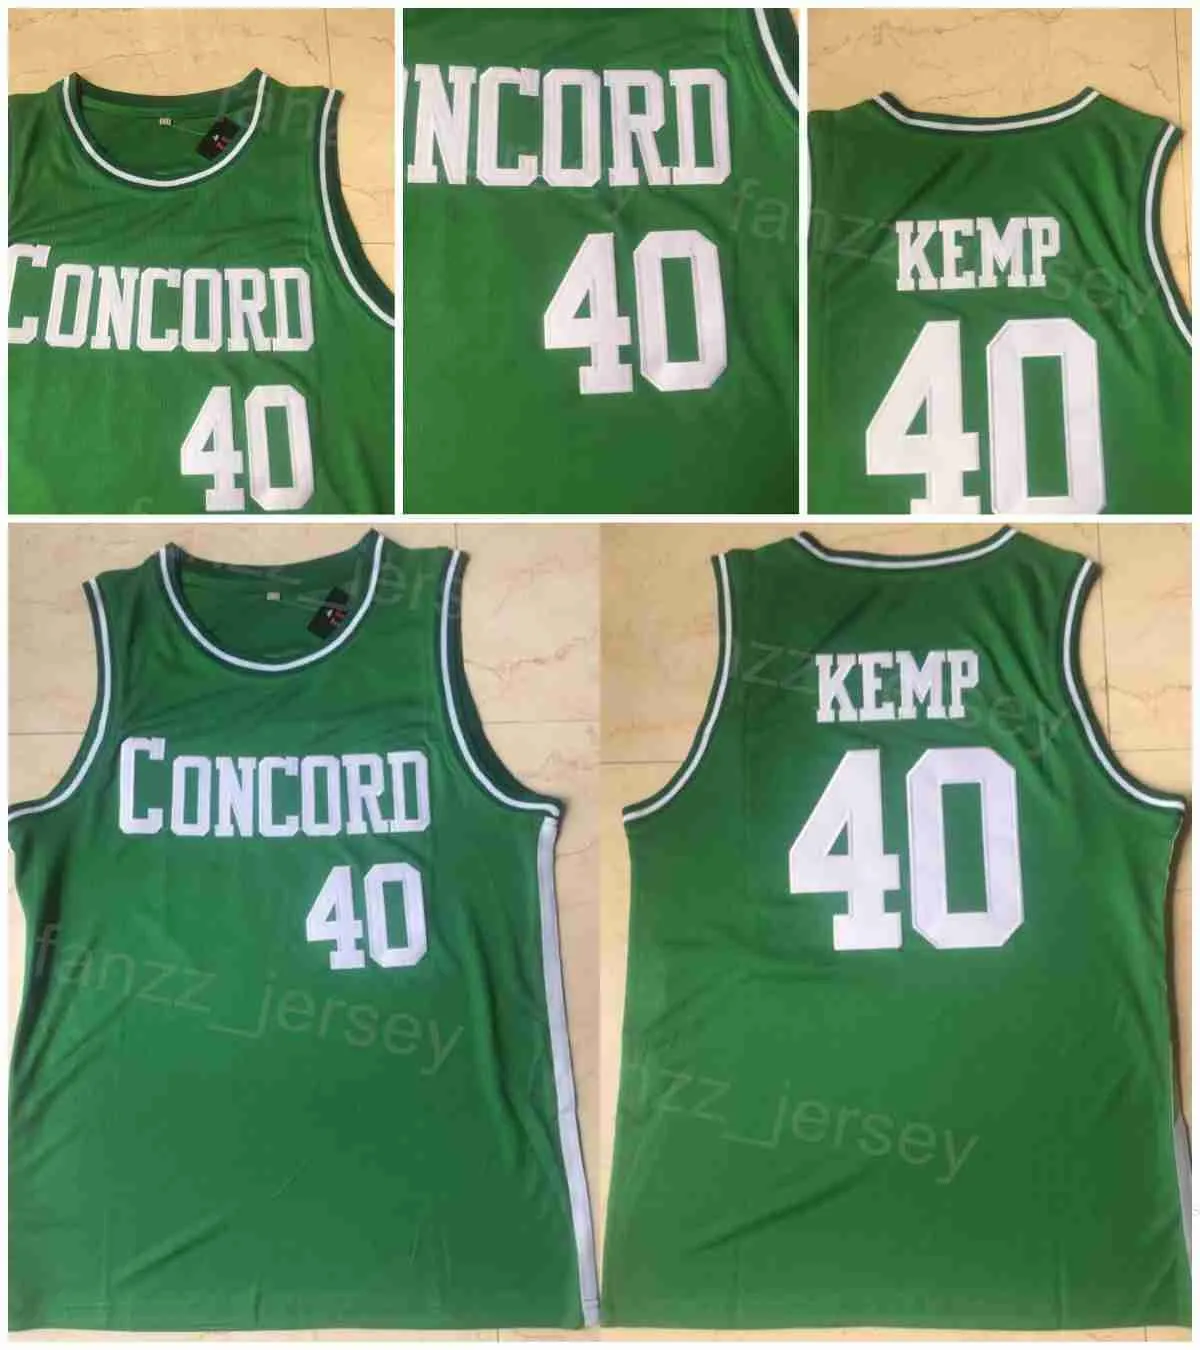 Академия Конкорда Средняя школа 40 Шон Кемп Джерси баскетбольный колледж Рубашка Университета Университета все сшитая команда зеленый для спортивных фанатов дышащий чистый хлопок NCAA